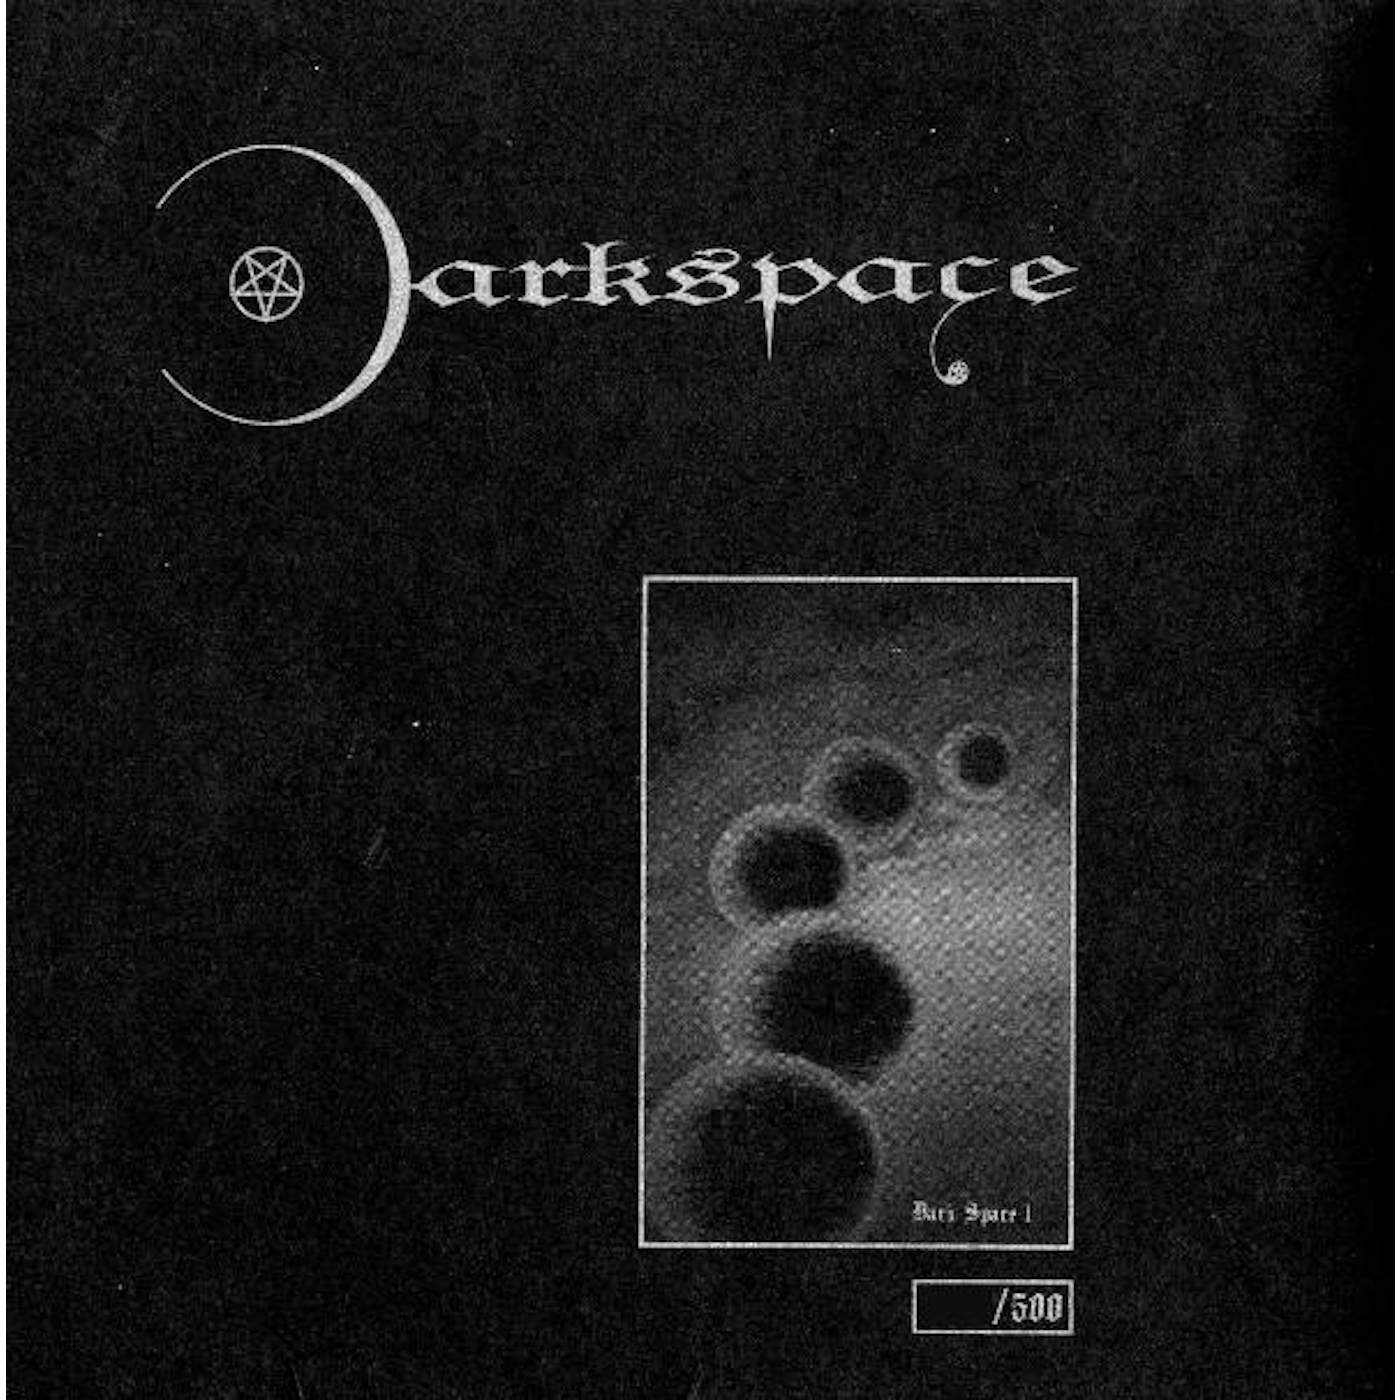 Darkspace. Darkspace группа. Darkspace 3. Darkspace – Dark Space i. Darkspace обложки альбомов.